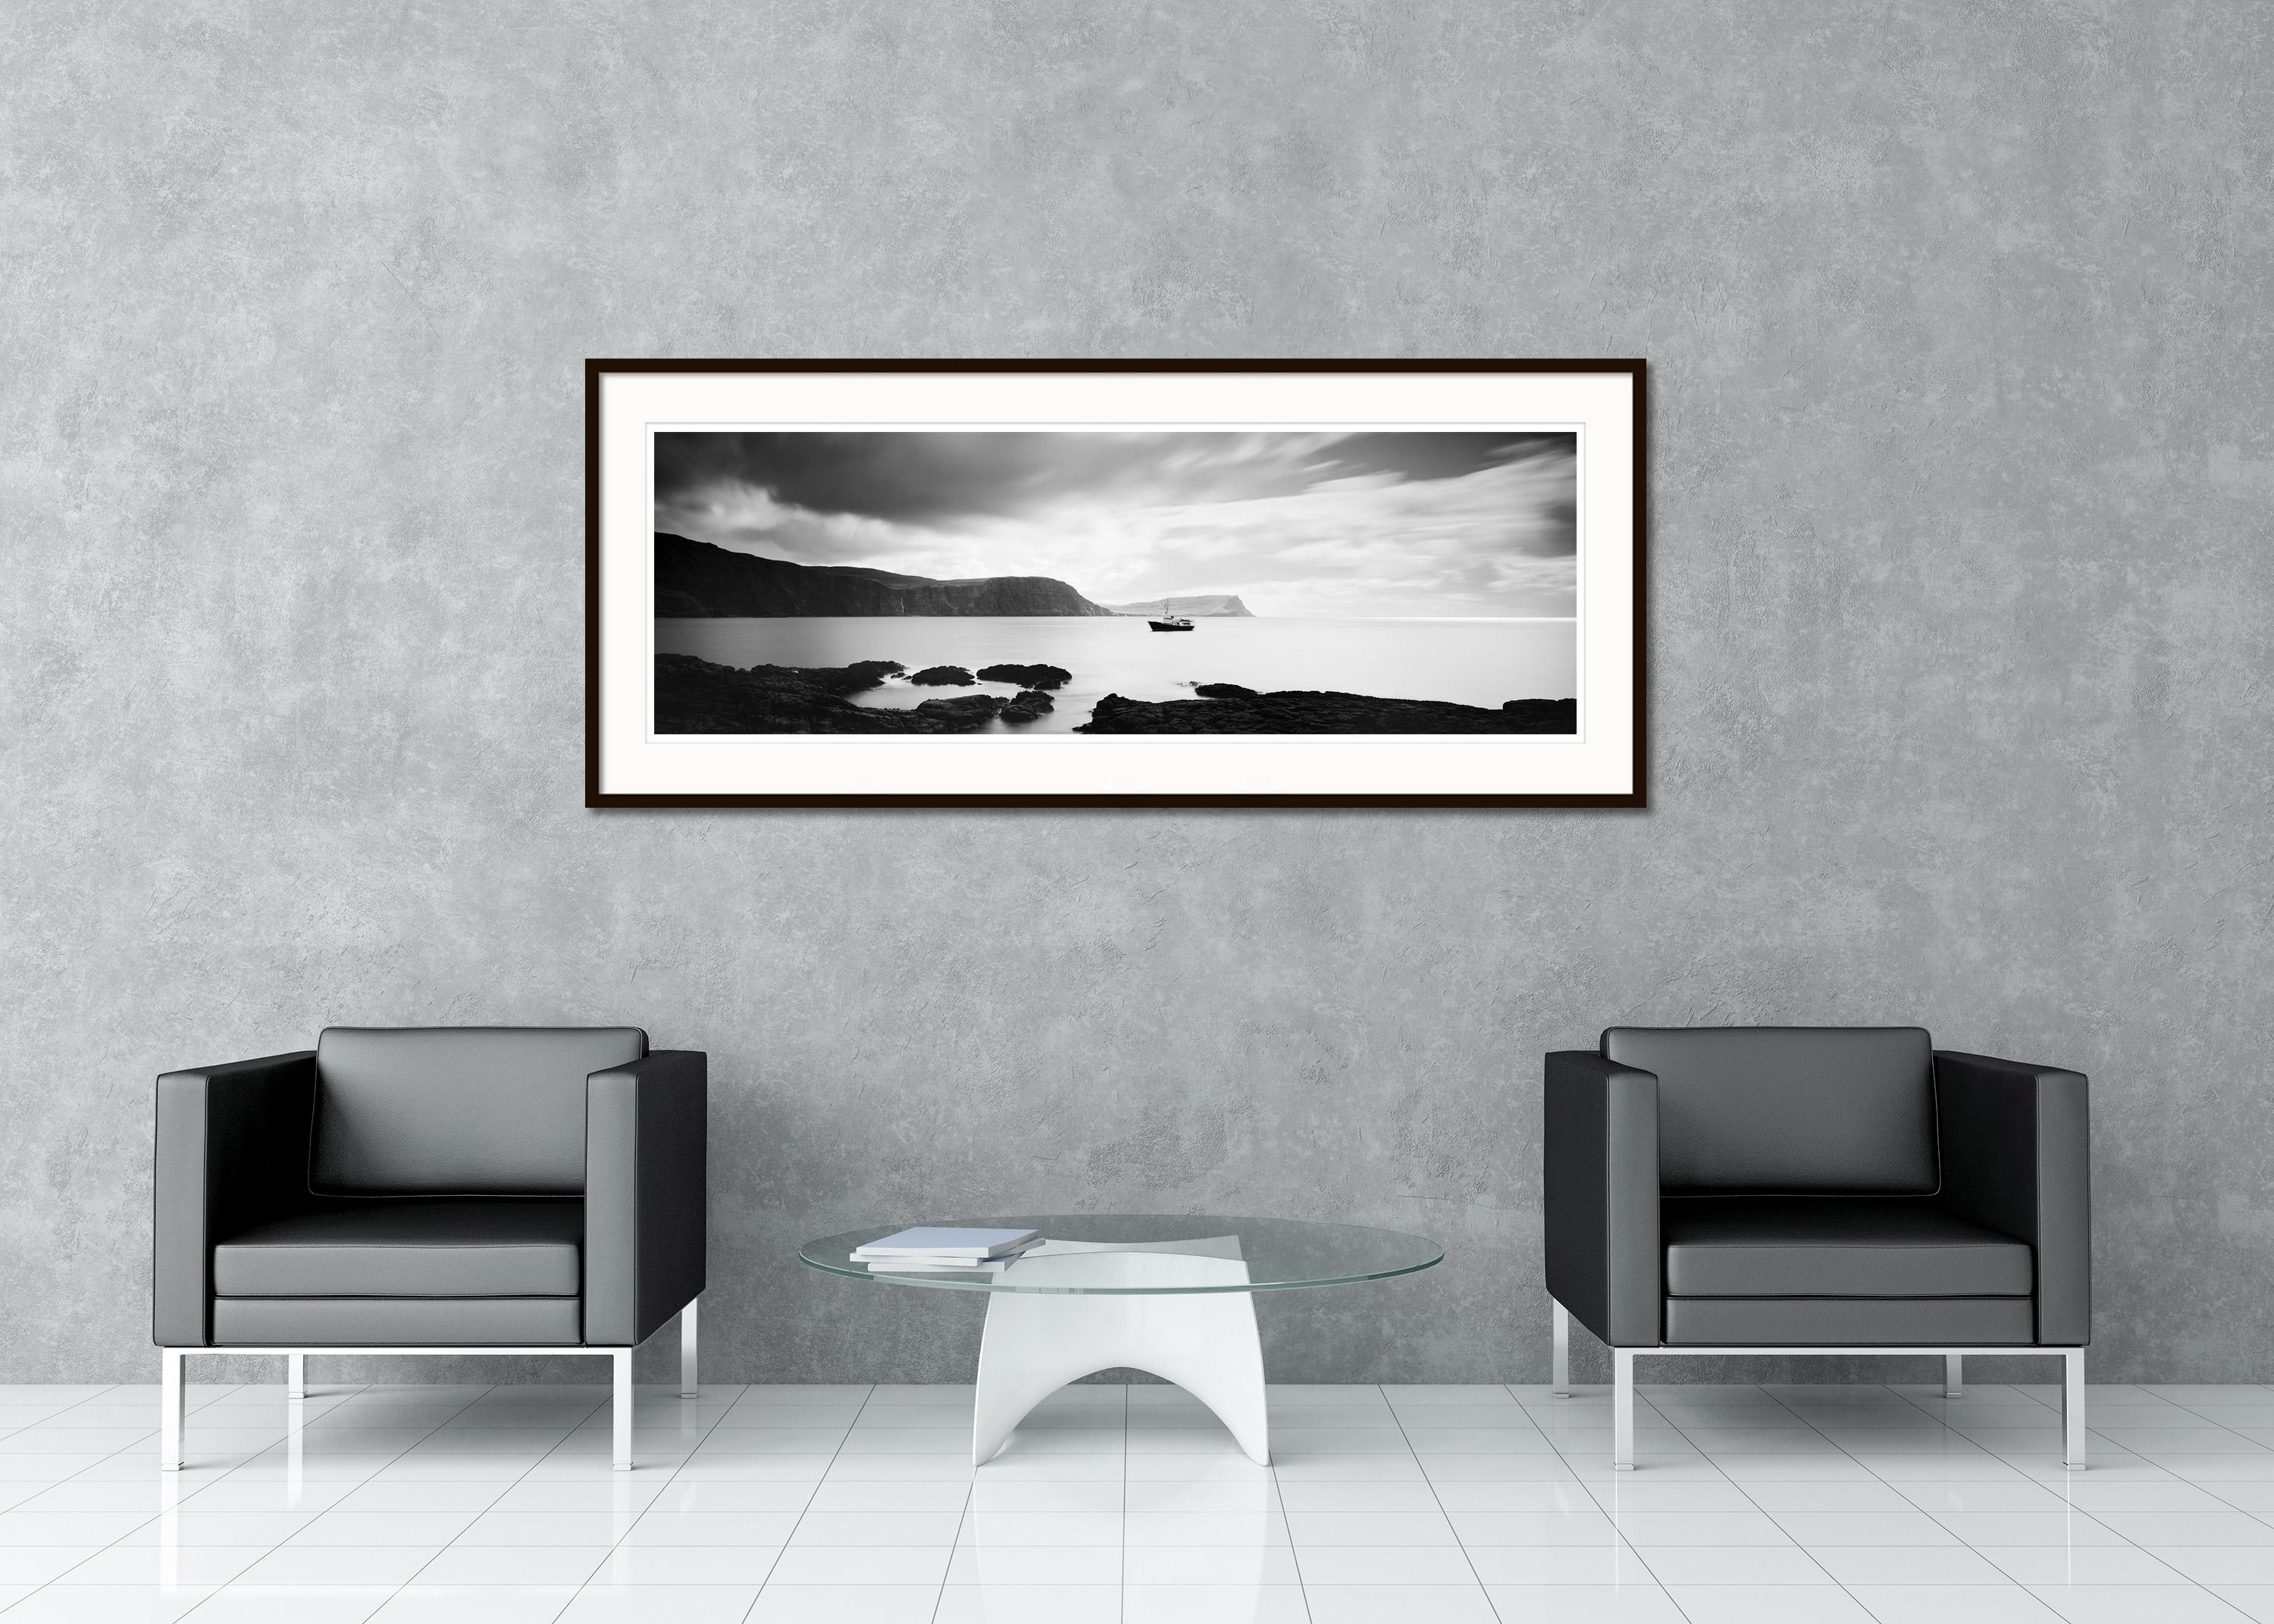 Schwarz-Weiß-Panorama-Fotografie - Fischerboot am Neist Point in Schottland mit fantastischer Küstenlinie bei stürmischem Wetter. Pigmenttintendruck, Auflage 9, signiert, betitelt, datiert und nummeriert vom Künstler. Mit Echtheitszertifikat.